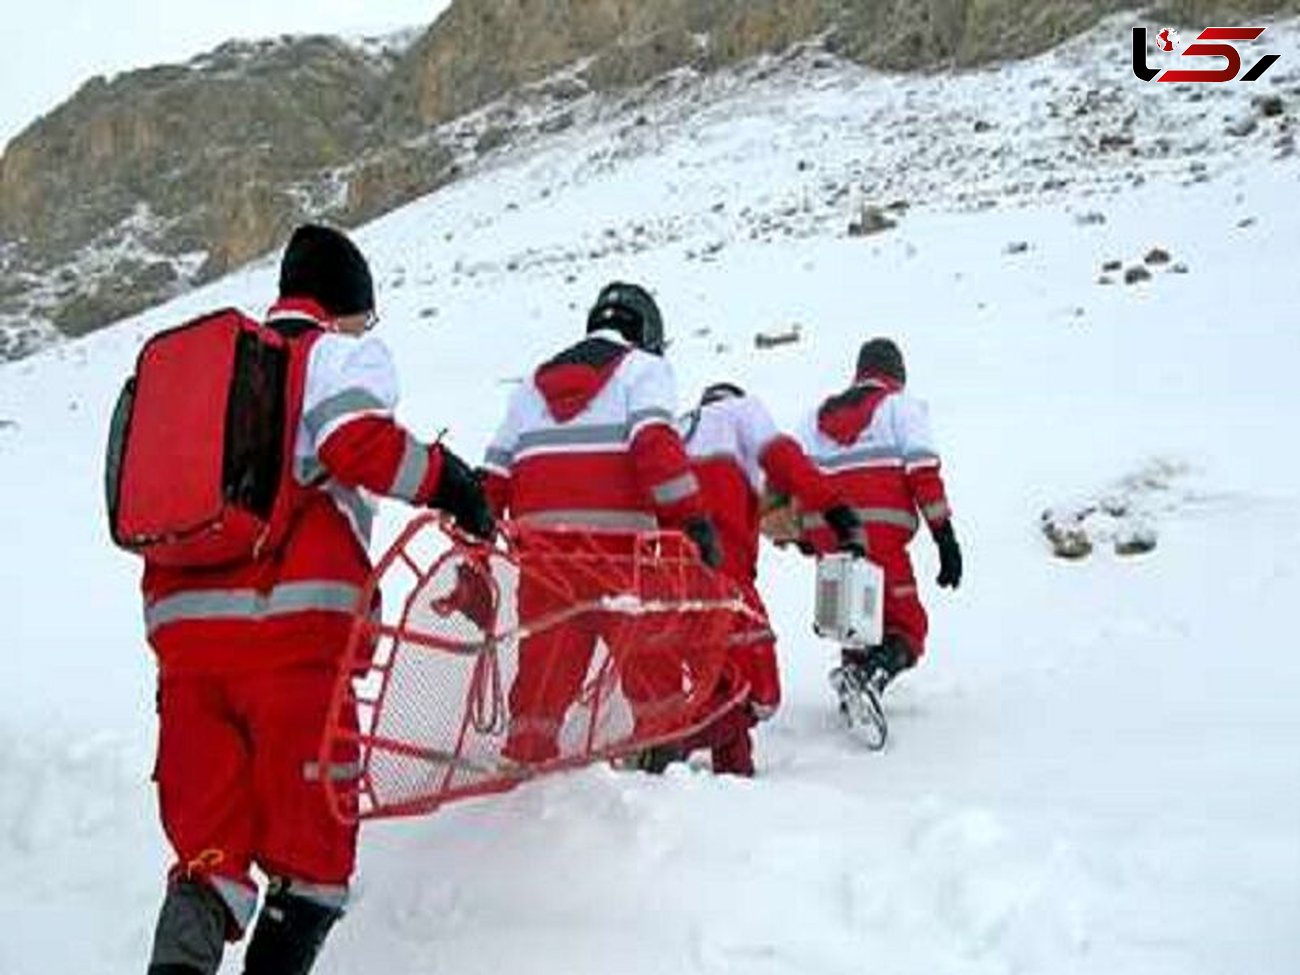 گرفتار شدن 2 زن و 2 مرد کوهنورد البرزی در ارتفاعات دماوند 